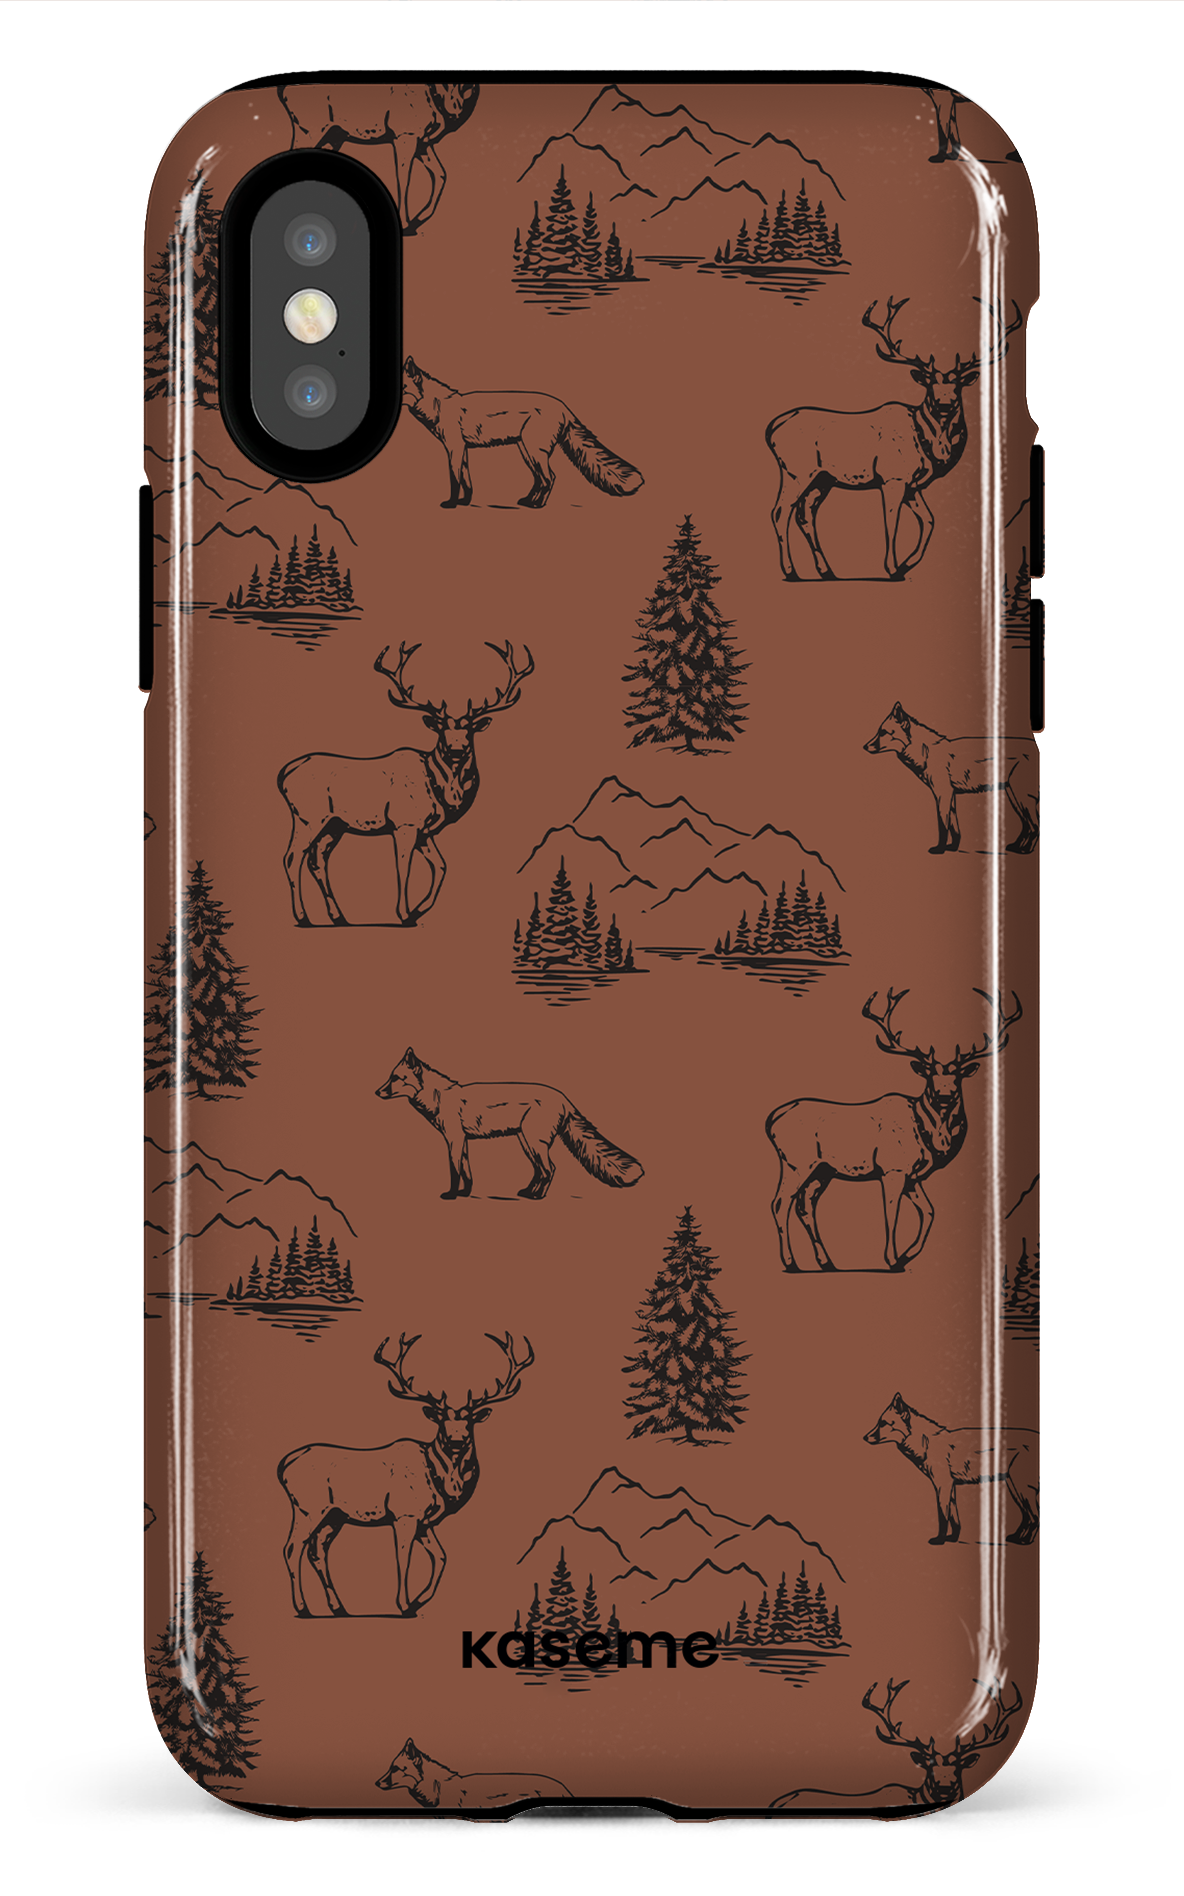 Wildlife - iPhone X/Xs